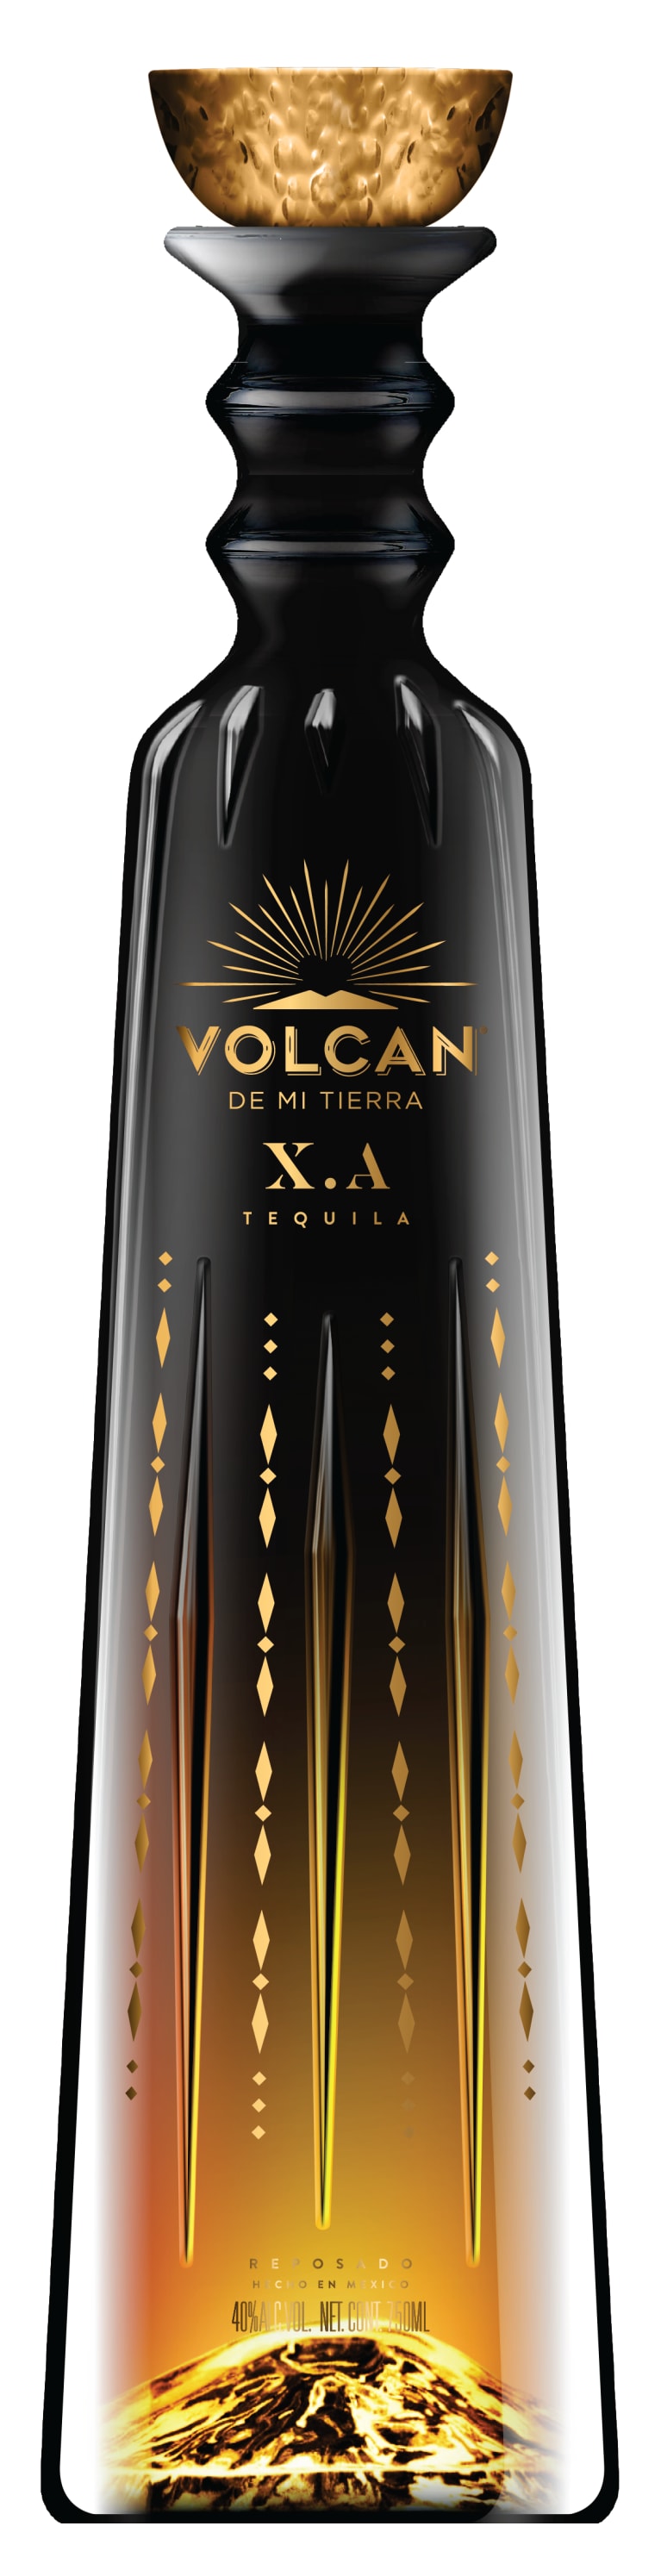 Volcan de Mi Tierra X.A. Tequila 750ml